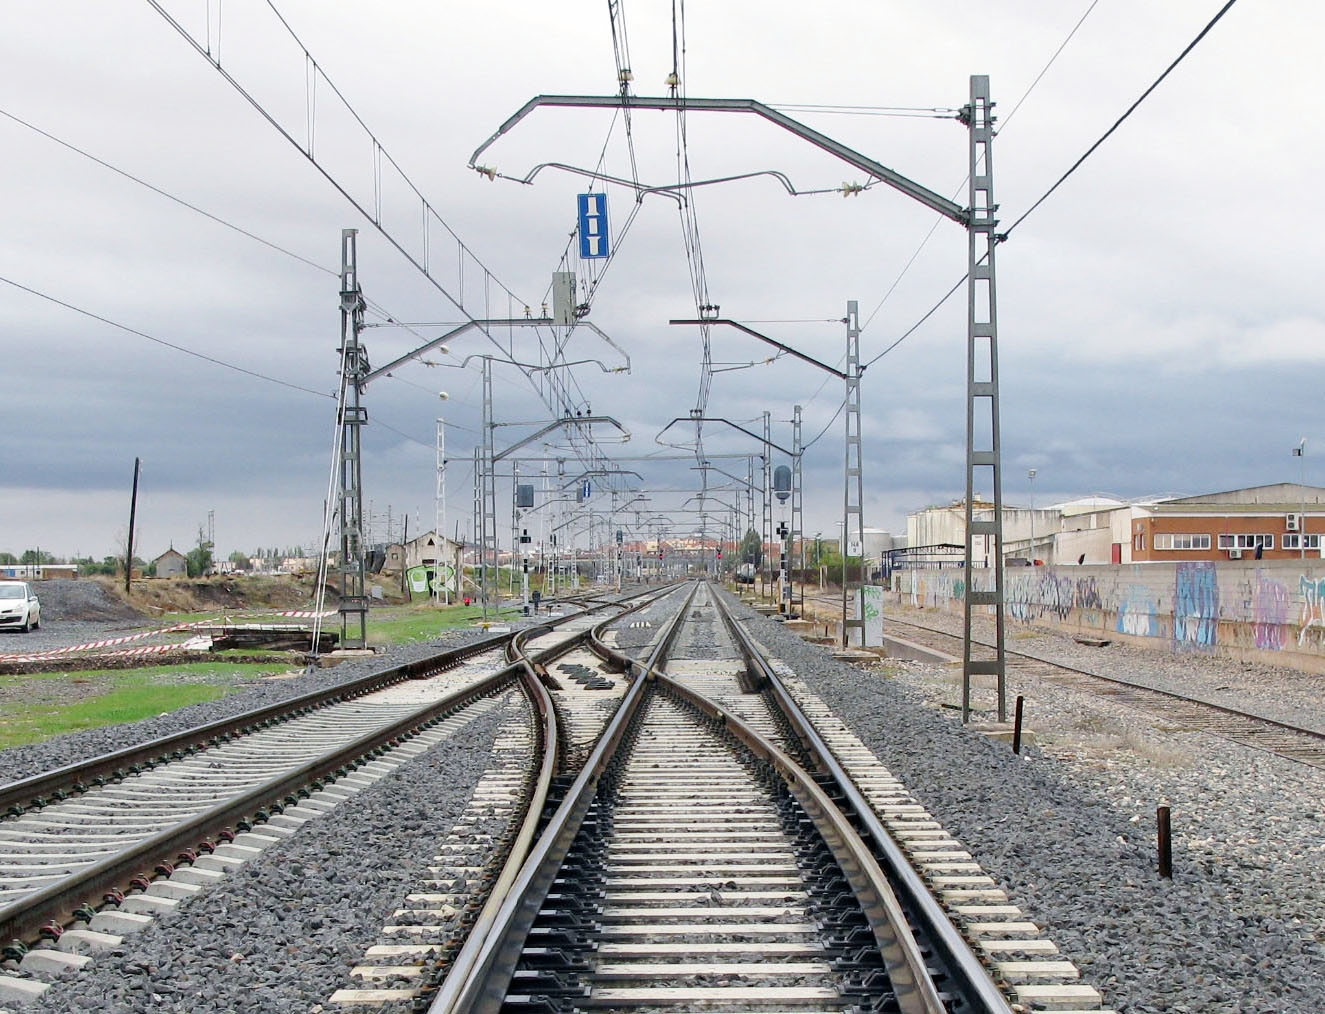 Catenaria a lo largo de una vía de tren: Adif gestiona la infraestructura.